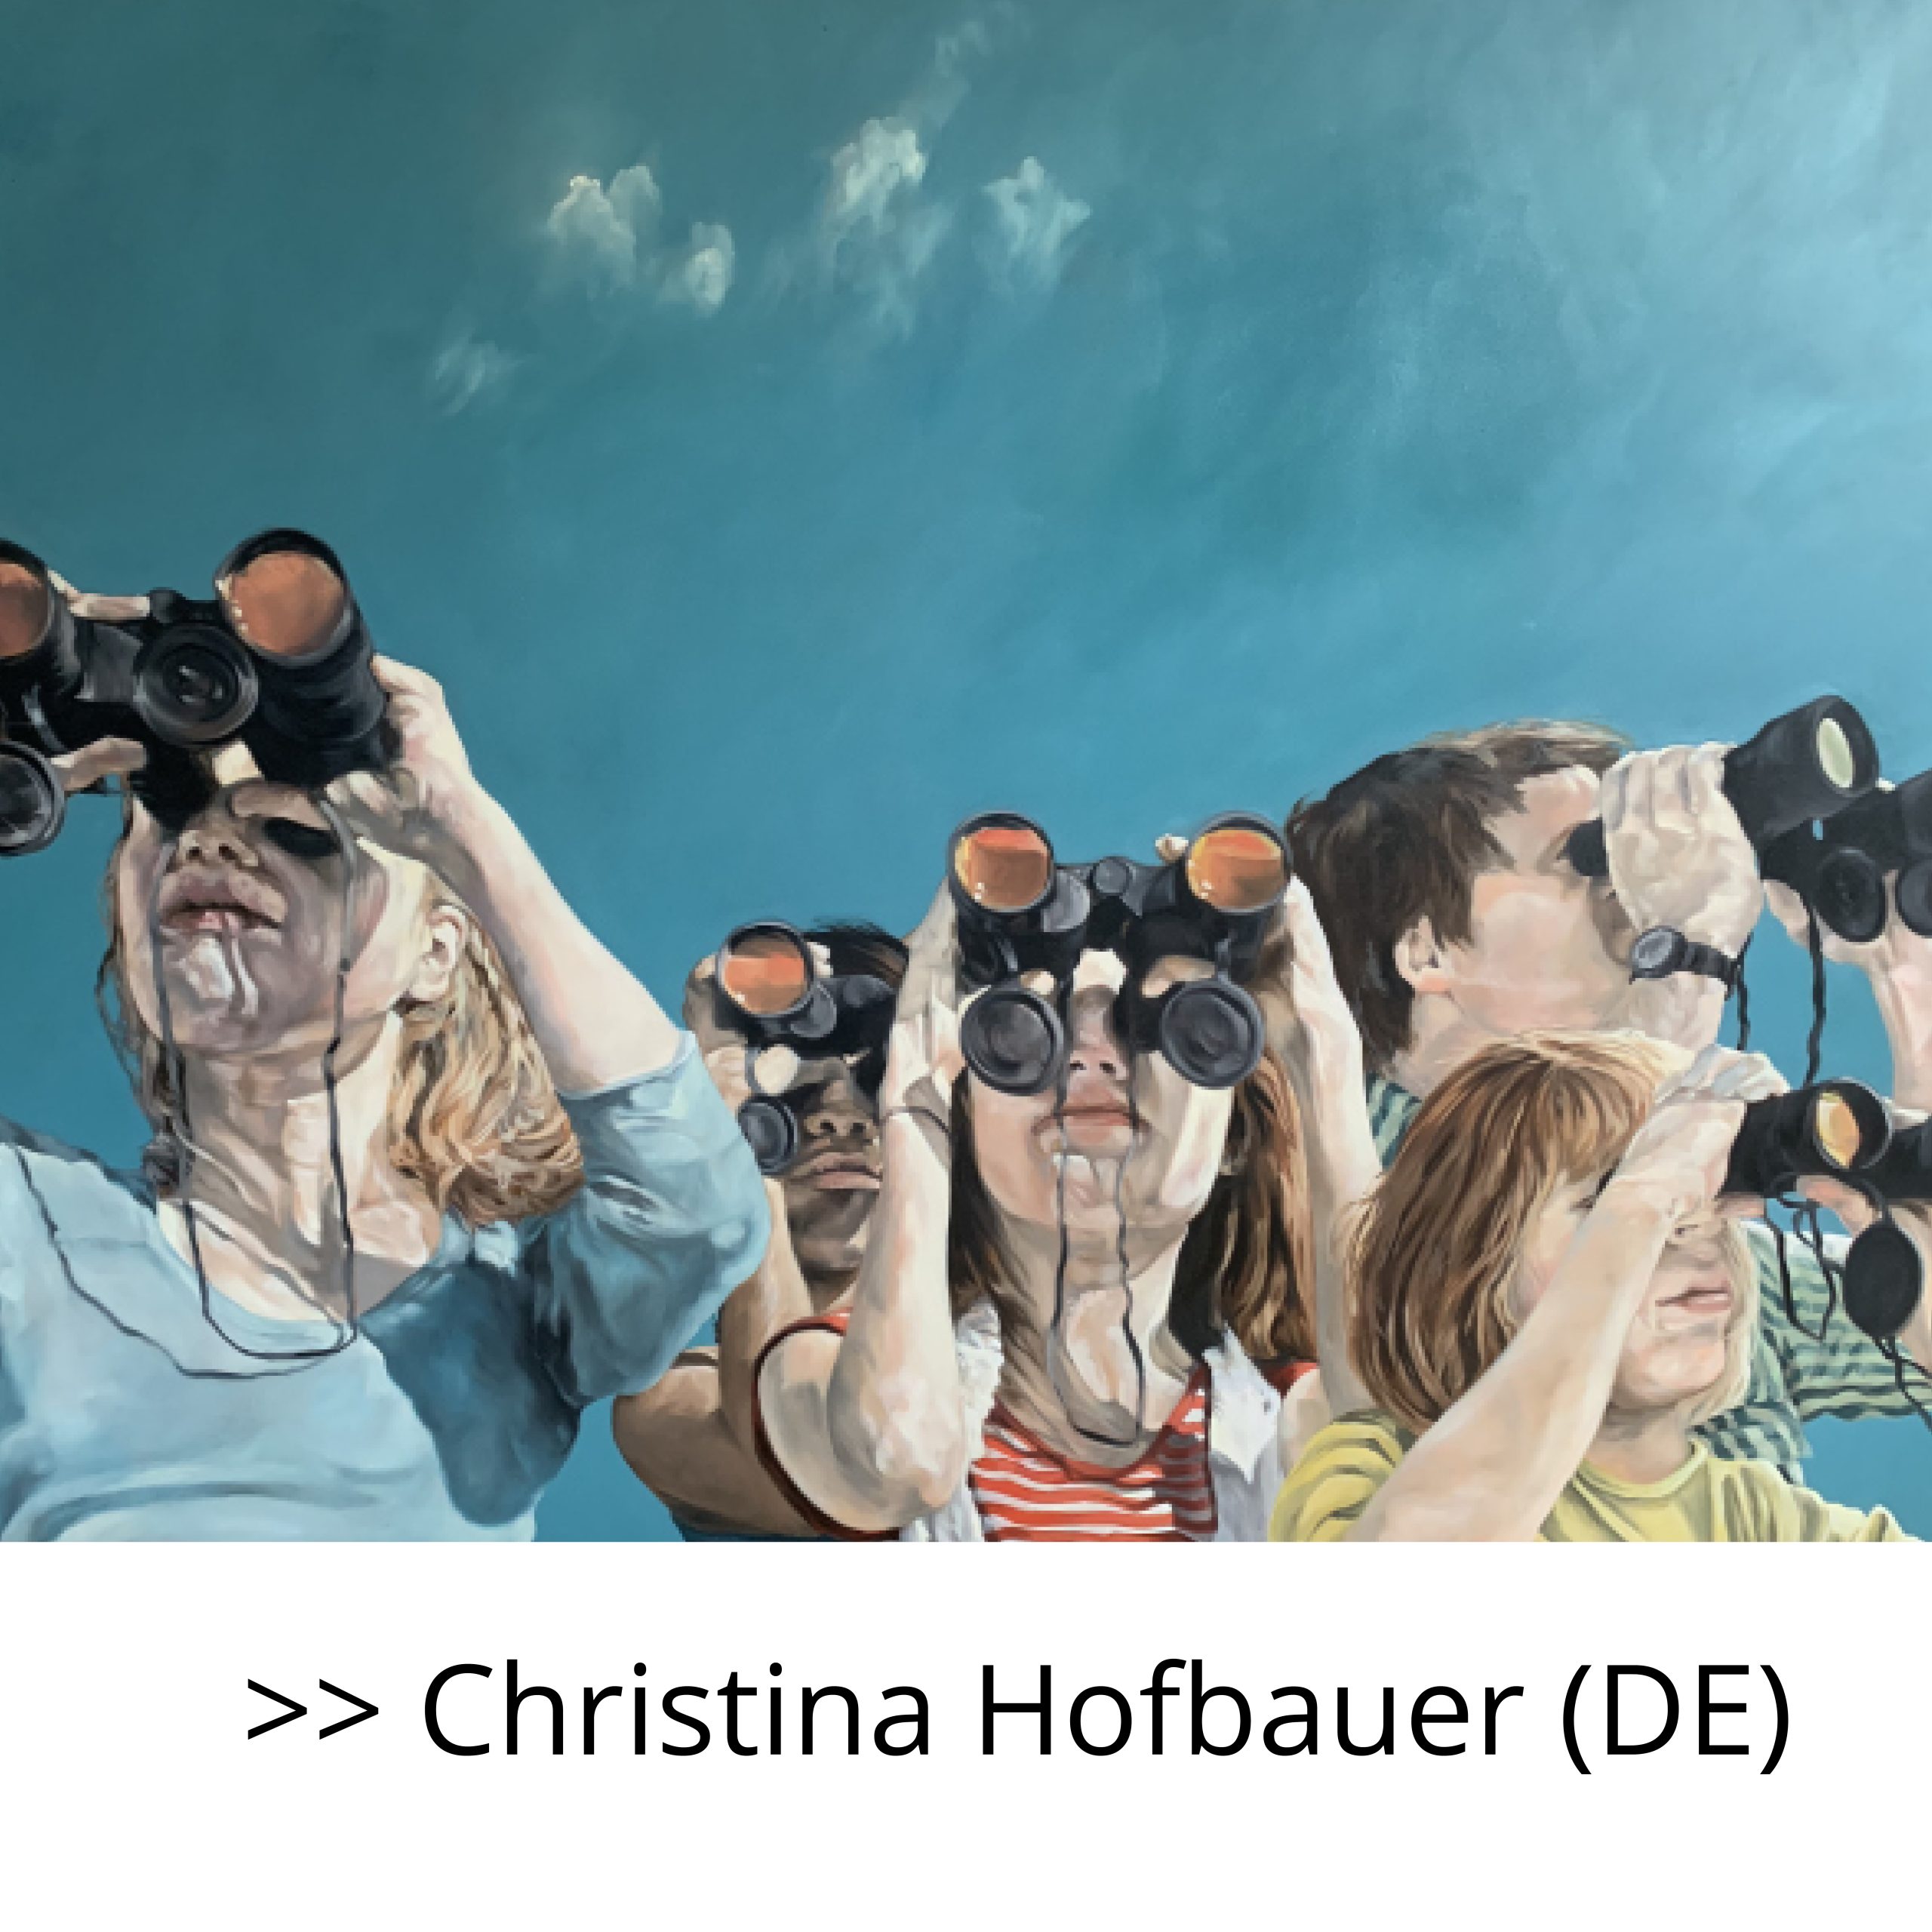 CHRISTINA HOFBAUER  (DE)